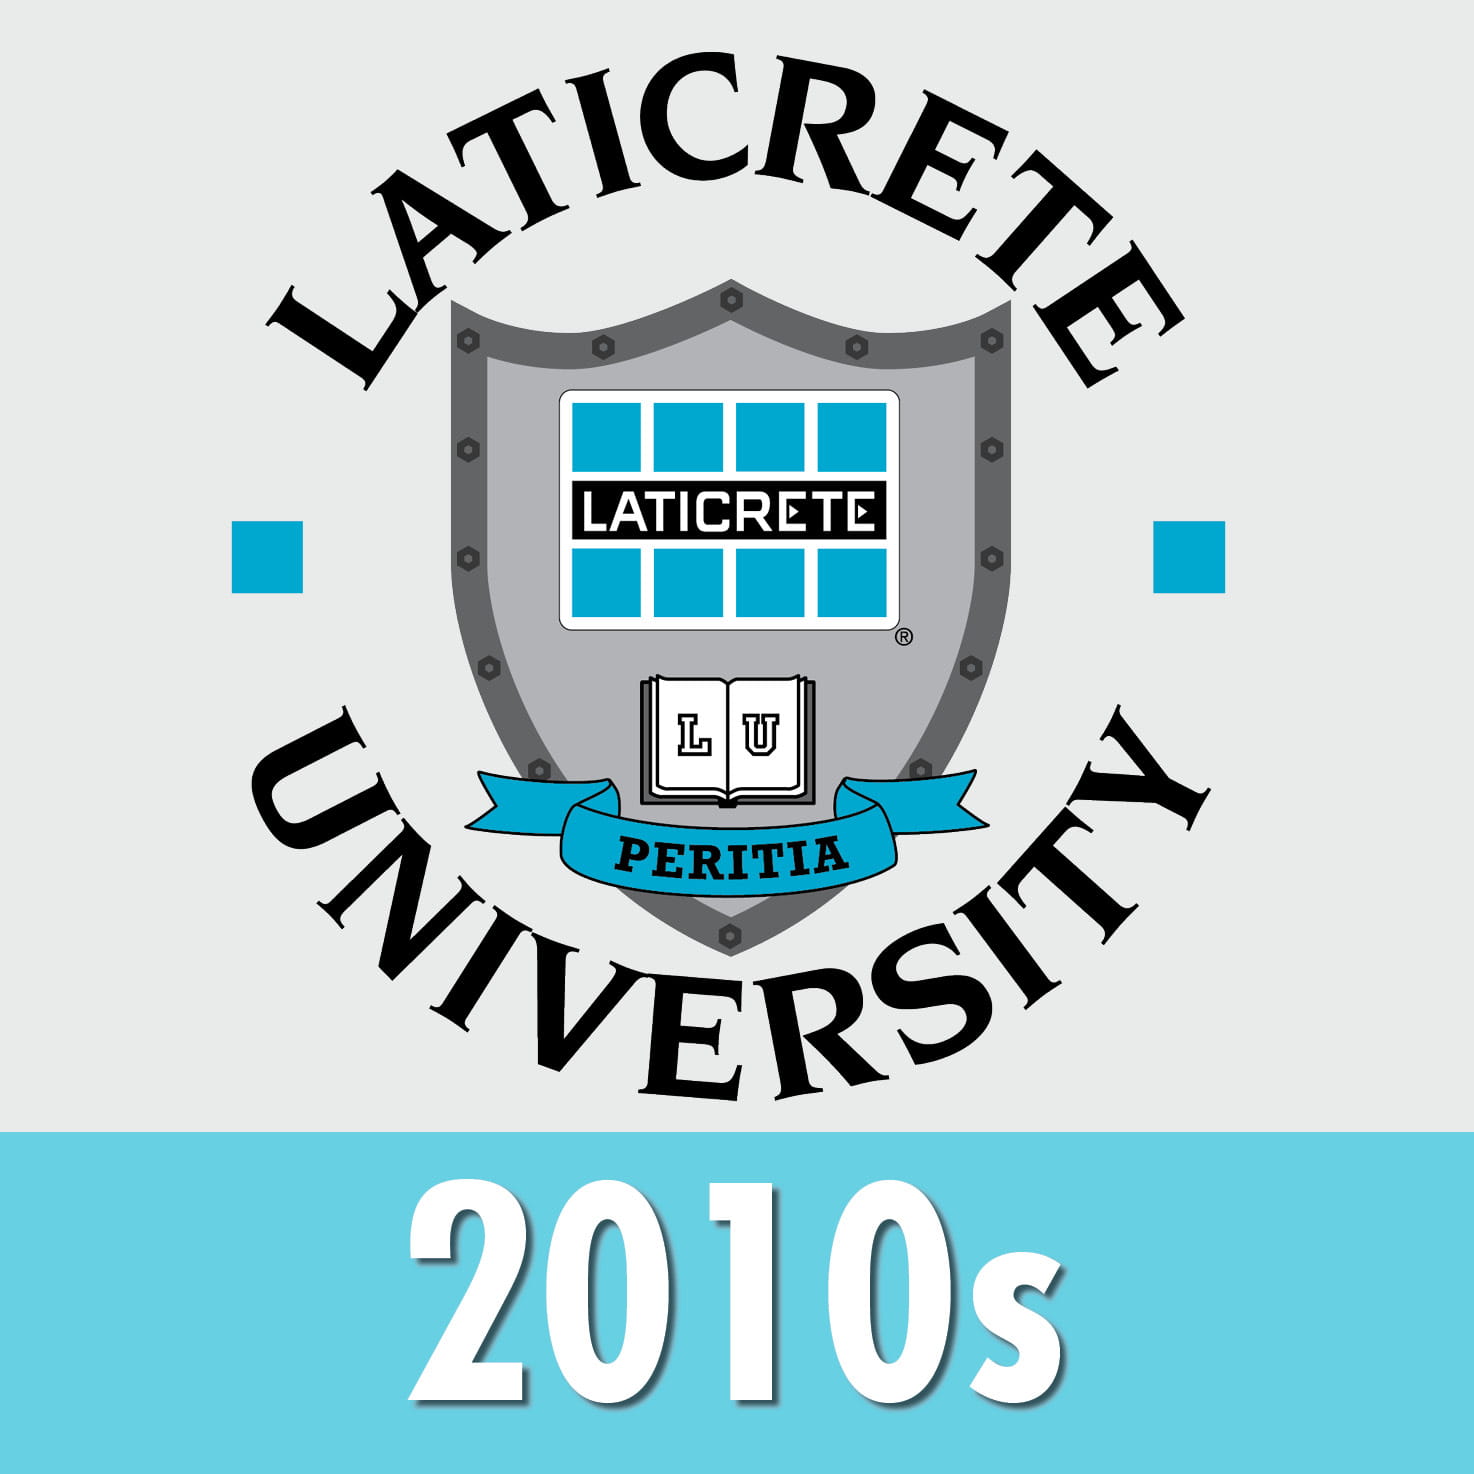 LATICRETE company history 2010s